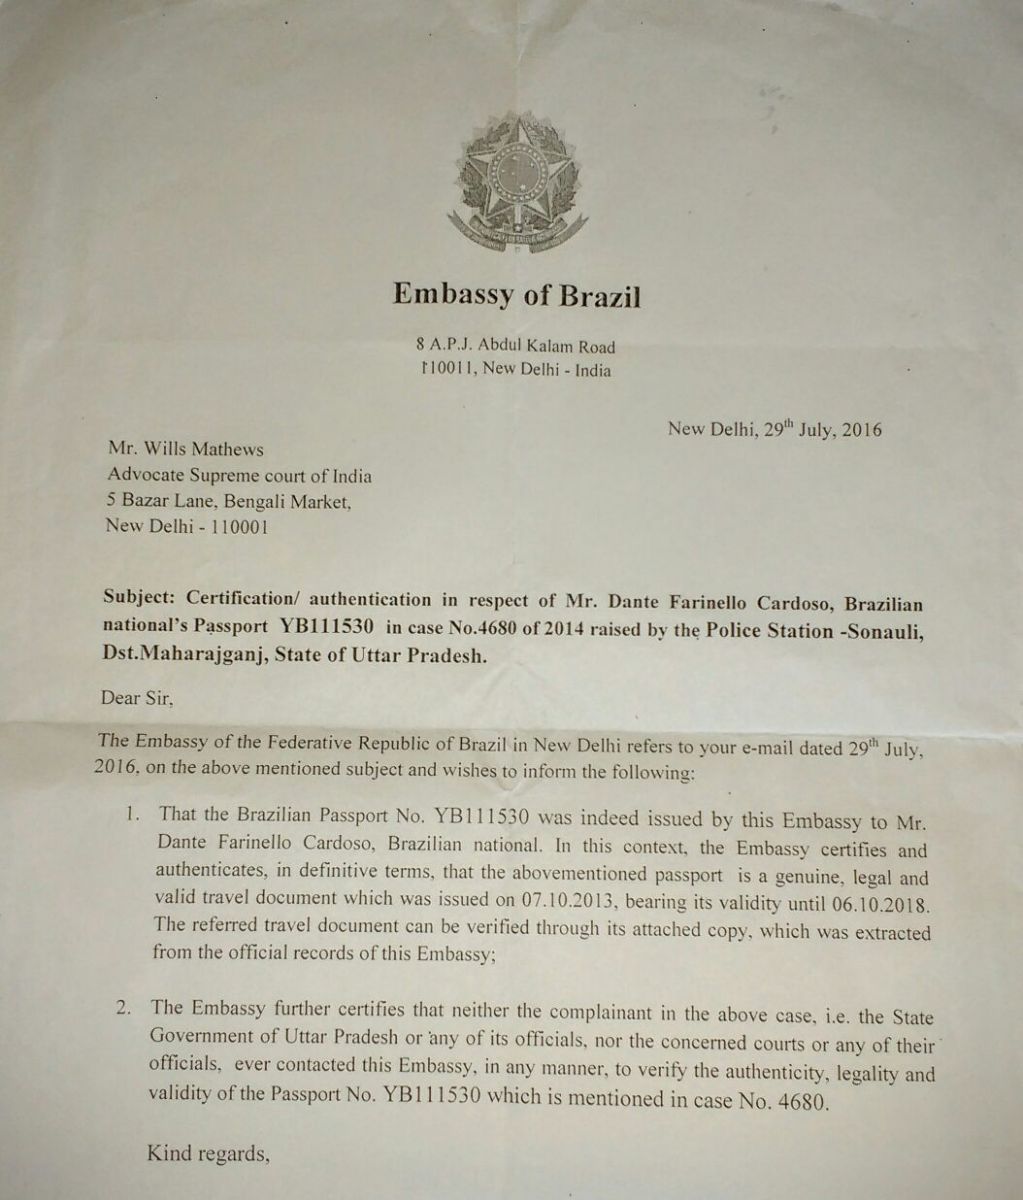 Documento enviada a Ana pela embaixada brasileira na Índia atesta que o passaporte de Dante é original, ao contrário do que afirma a Justiça indiana (Foto: Arquivo pessoal)